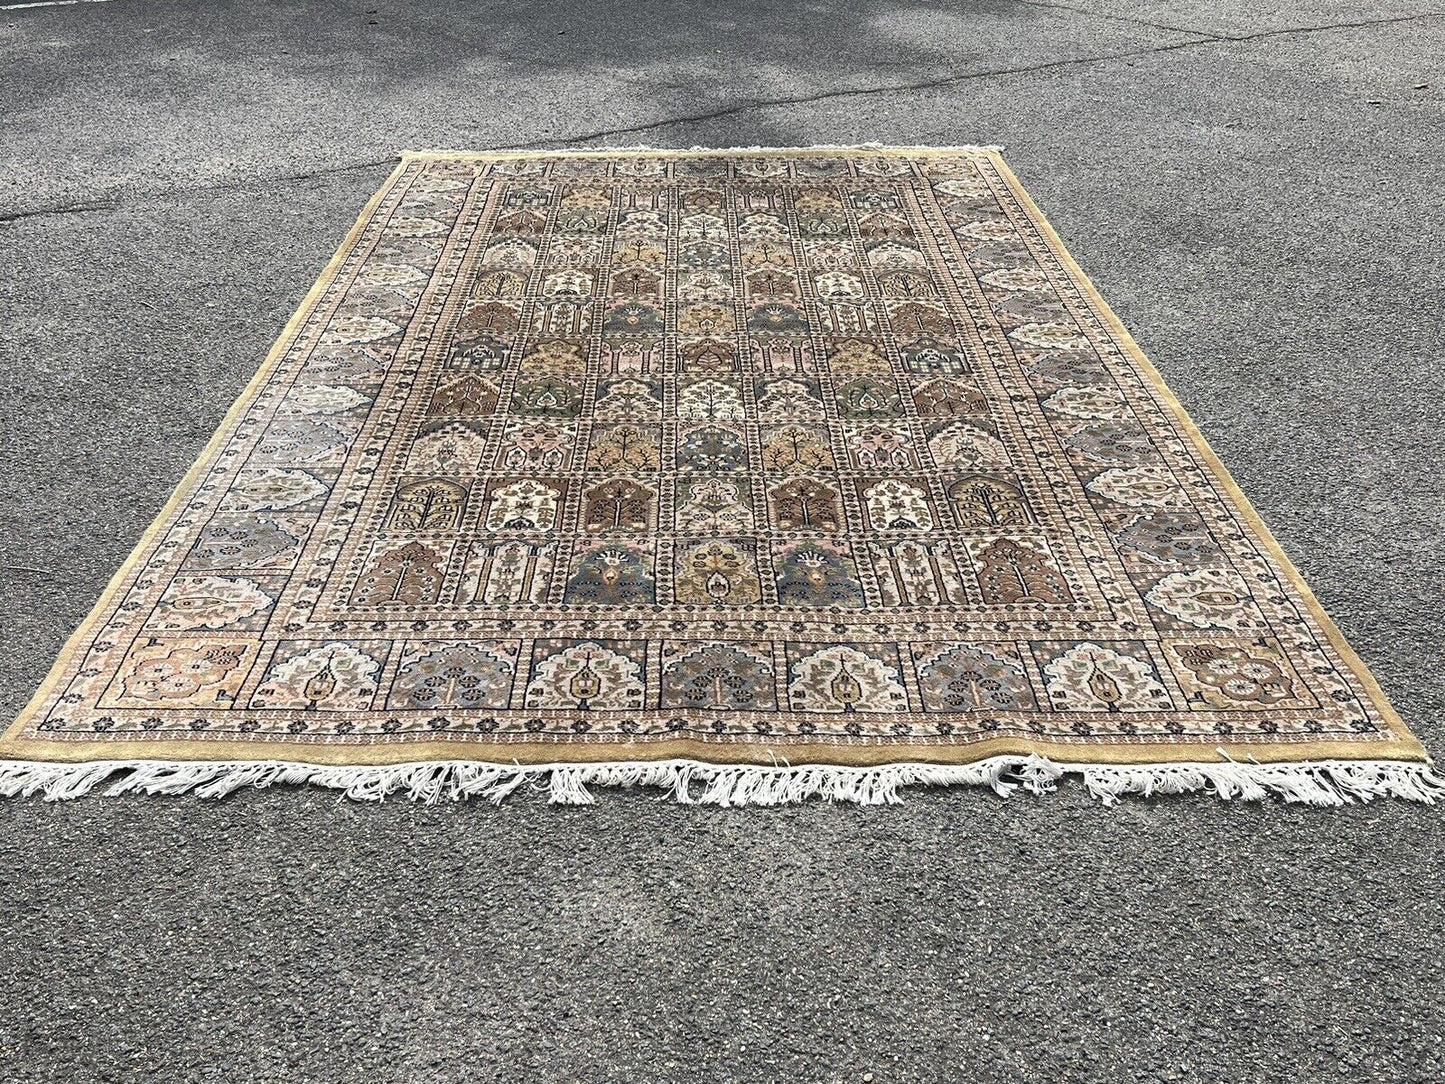 Rug, Carpet 295 X 180 Cms